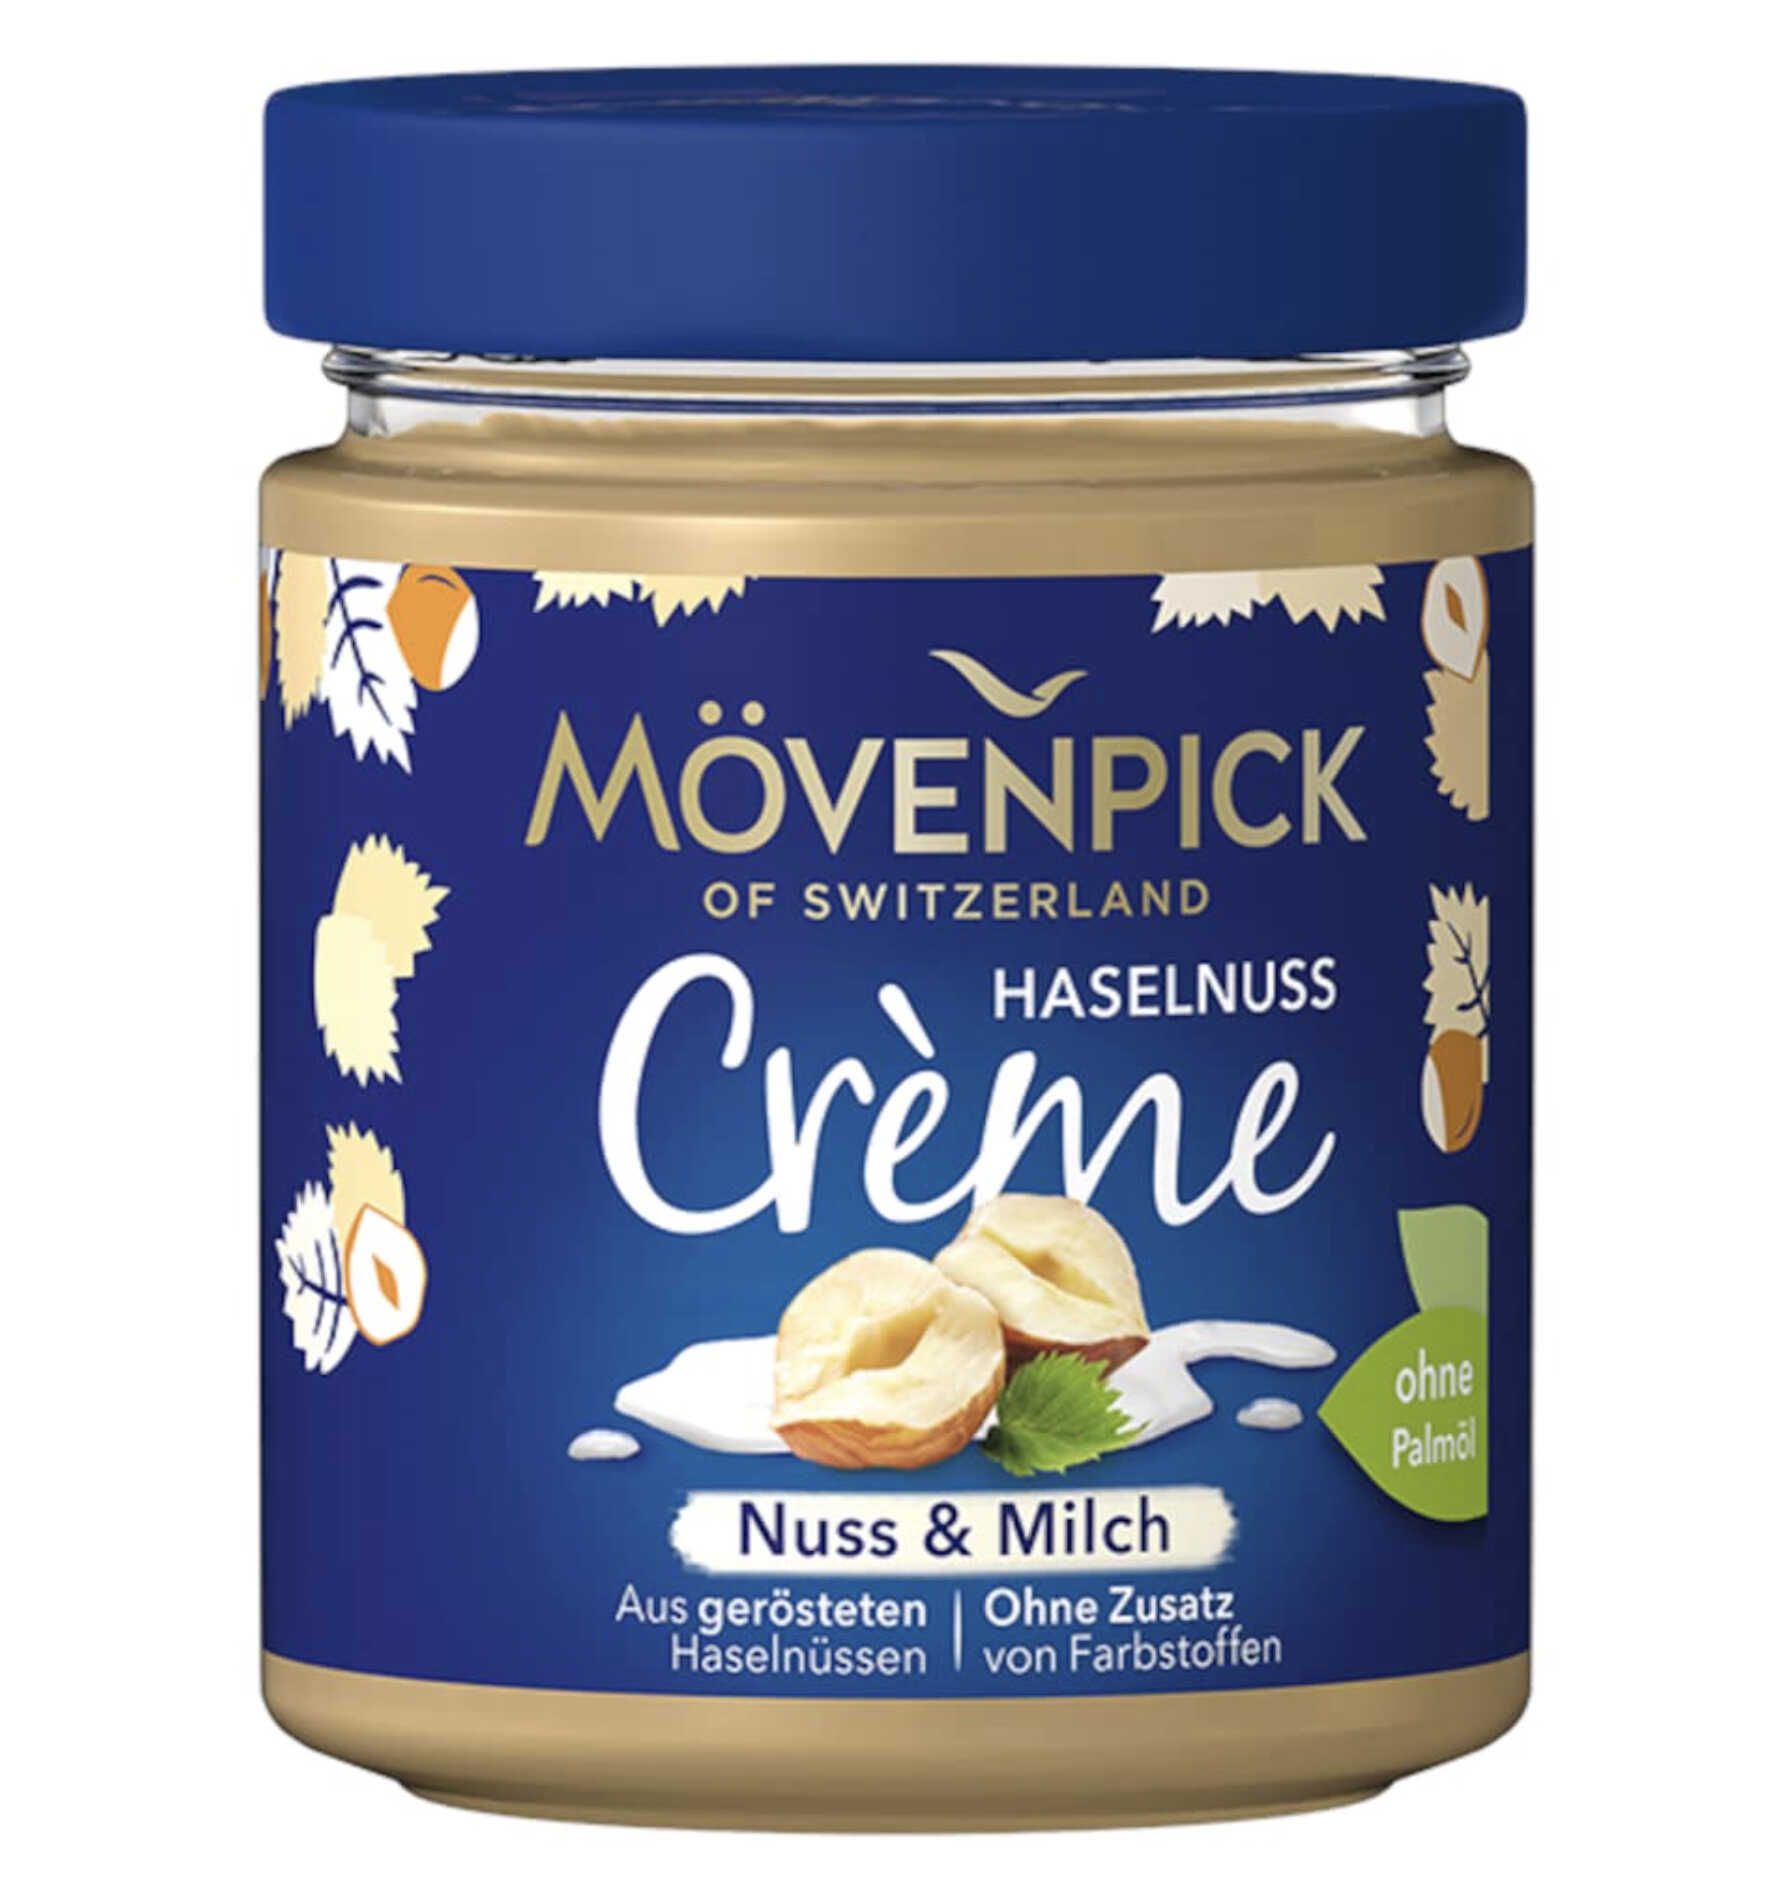 300g Mövenpick Haselnuss Crème Nuss & Milch für 2,84€ statt 4,39€